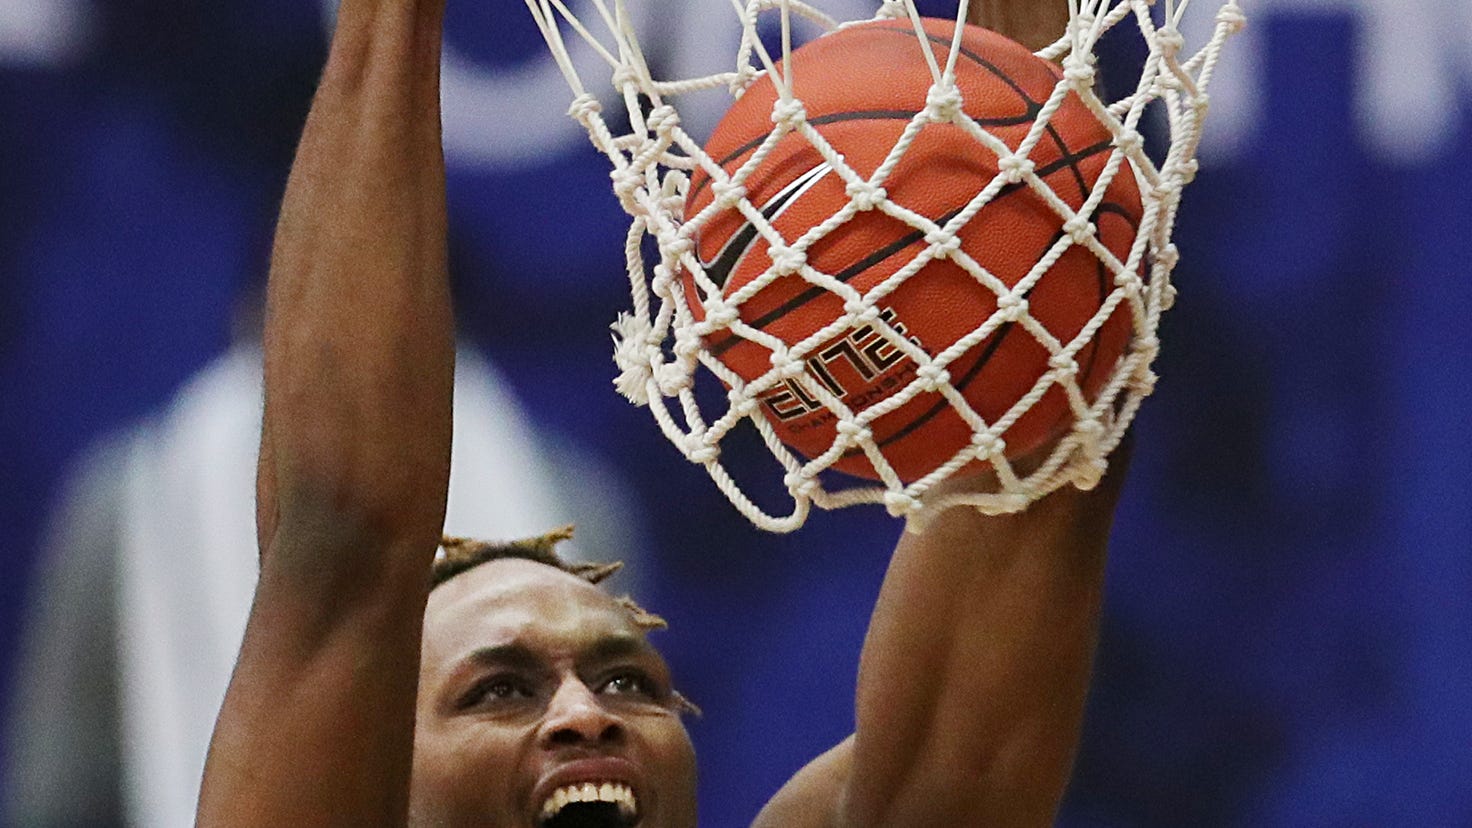 University of Akron basketball Zips embark on NBAlike schedule